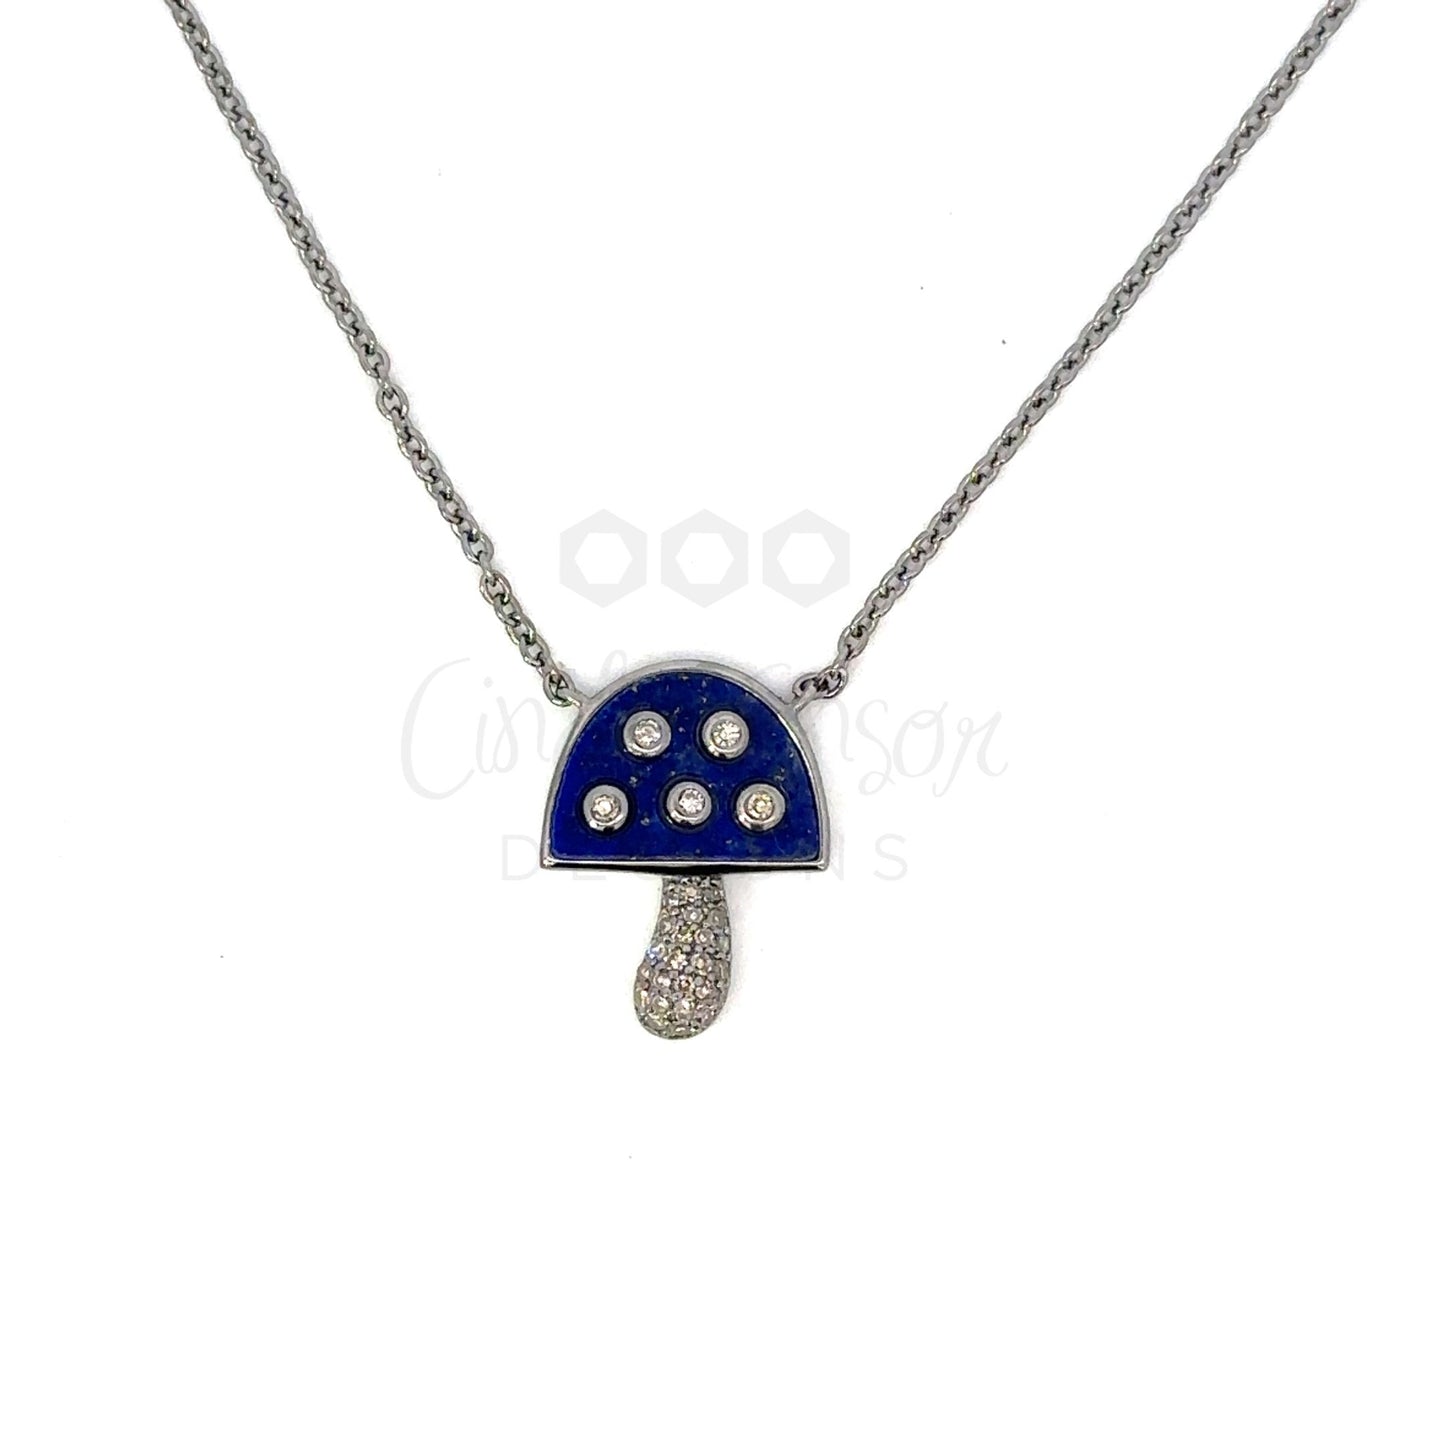 Enamel and Diamond Mushroom Necklace with Pave Stem